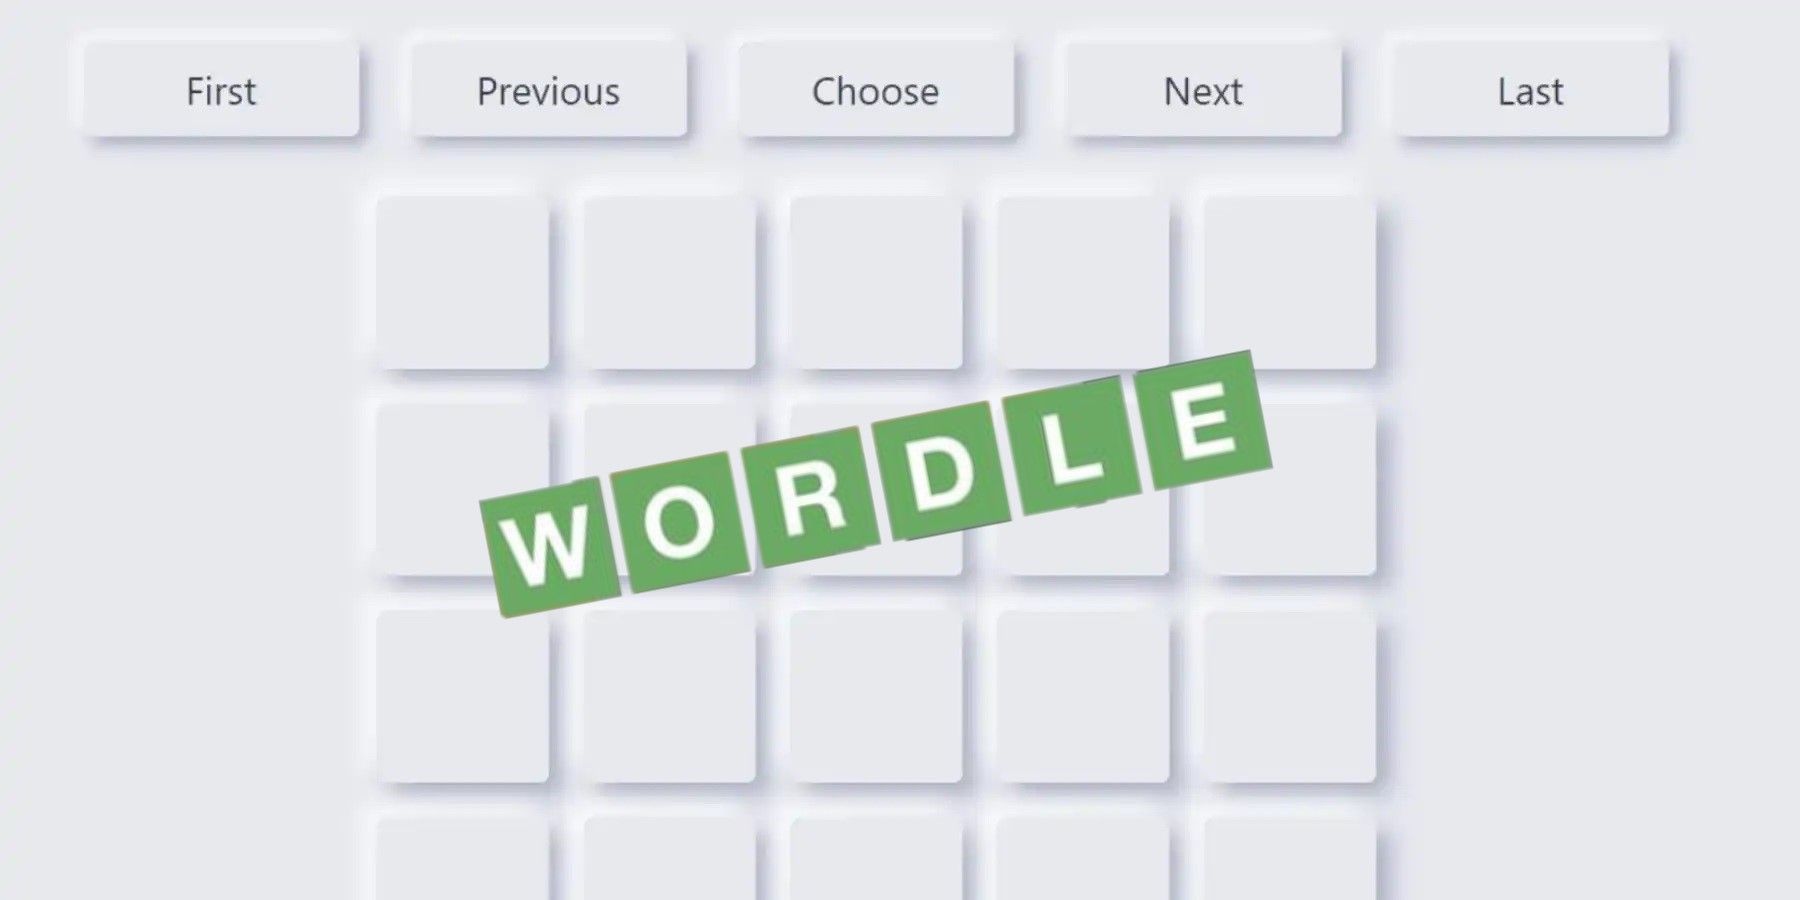 Posledný vypnutie archívu Wordle by mohlo byť zrušené